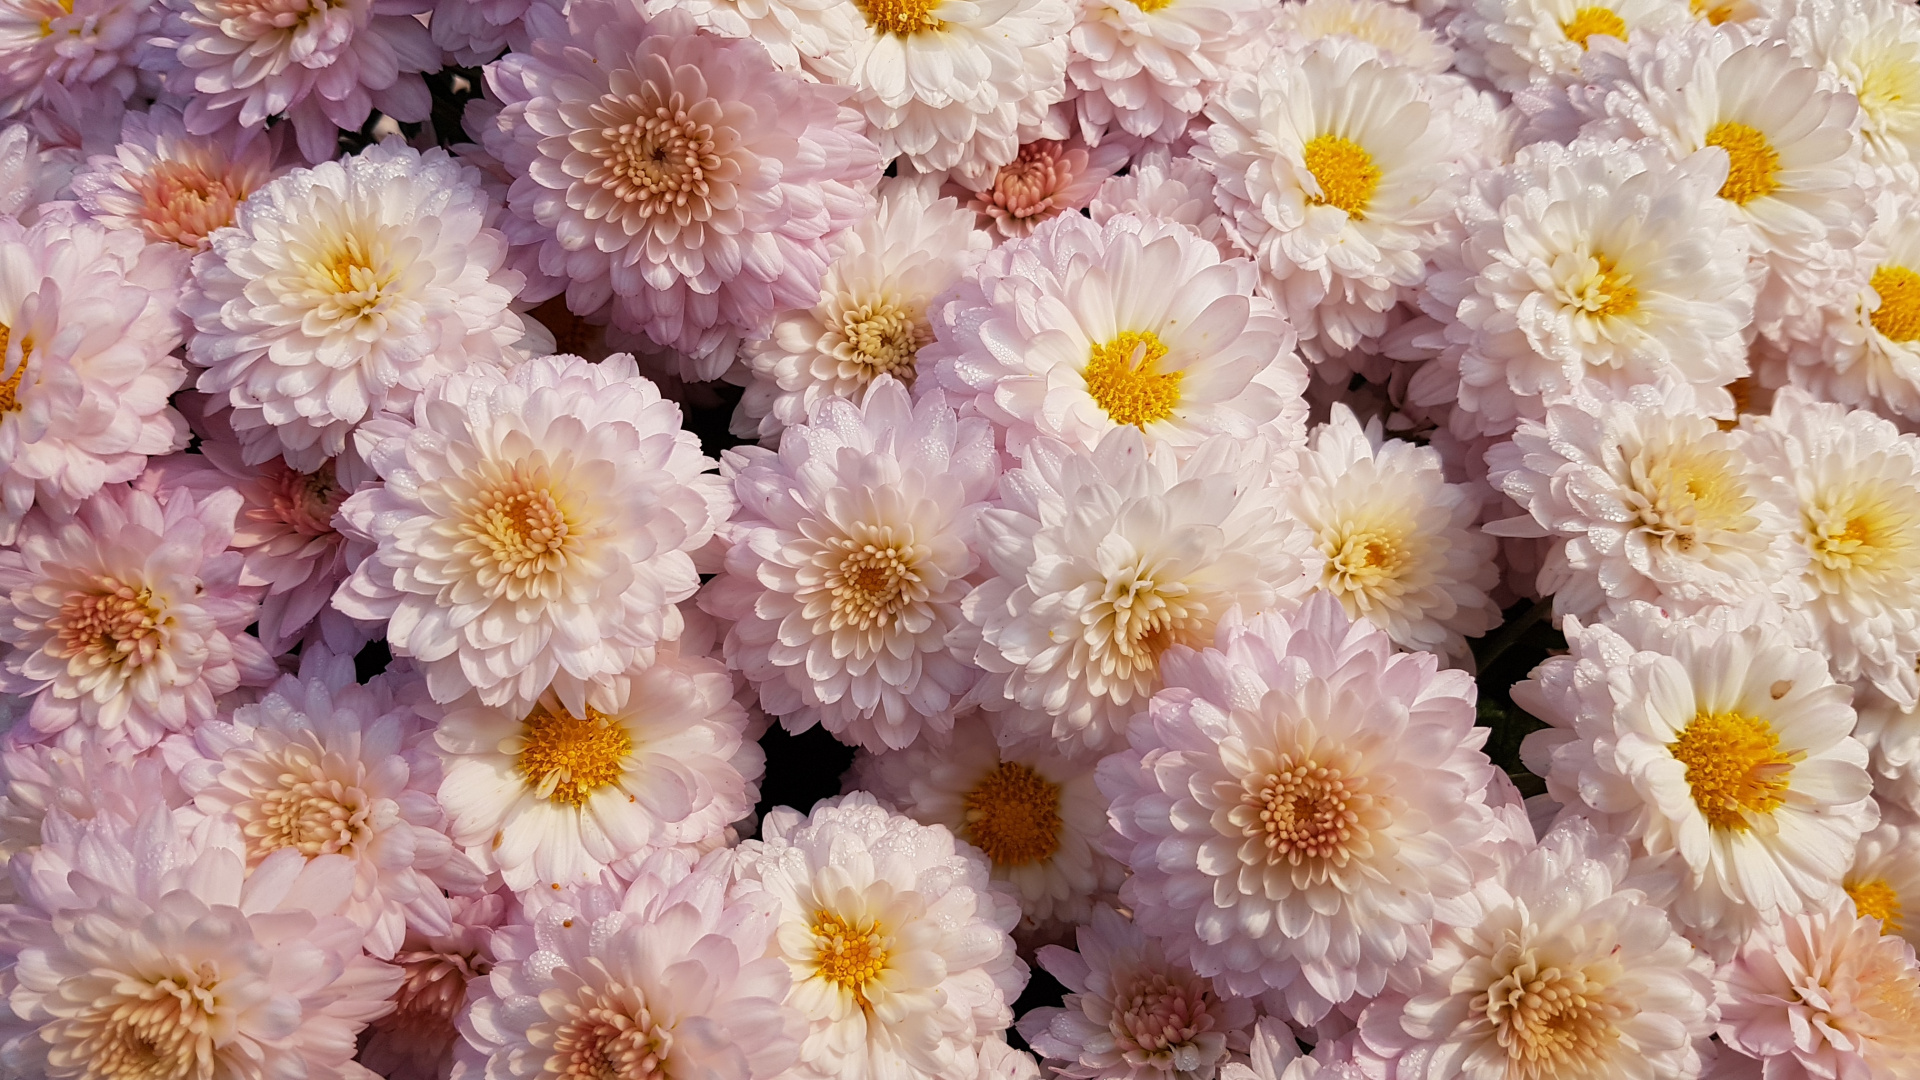 Flores Blancas y Moradas en Fotografía de Cerca. Wallpaper in 1920x1080 Resolution